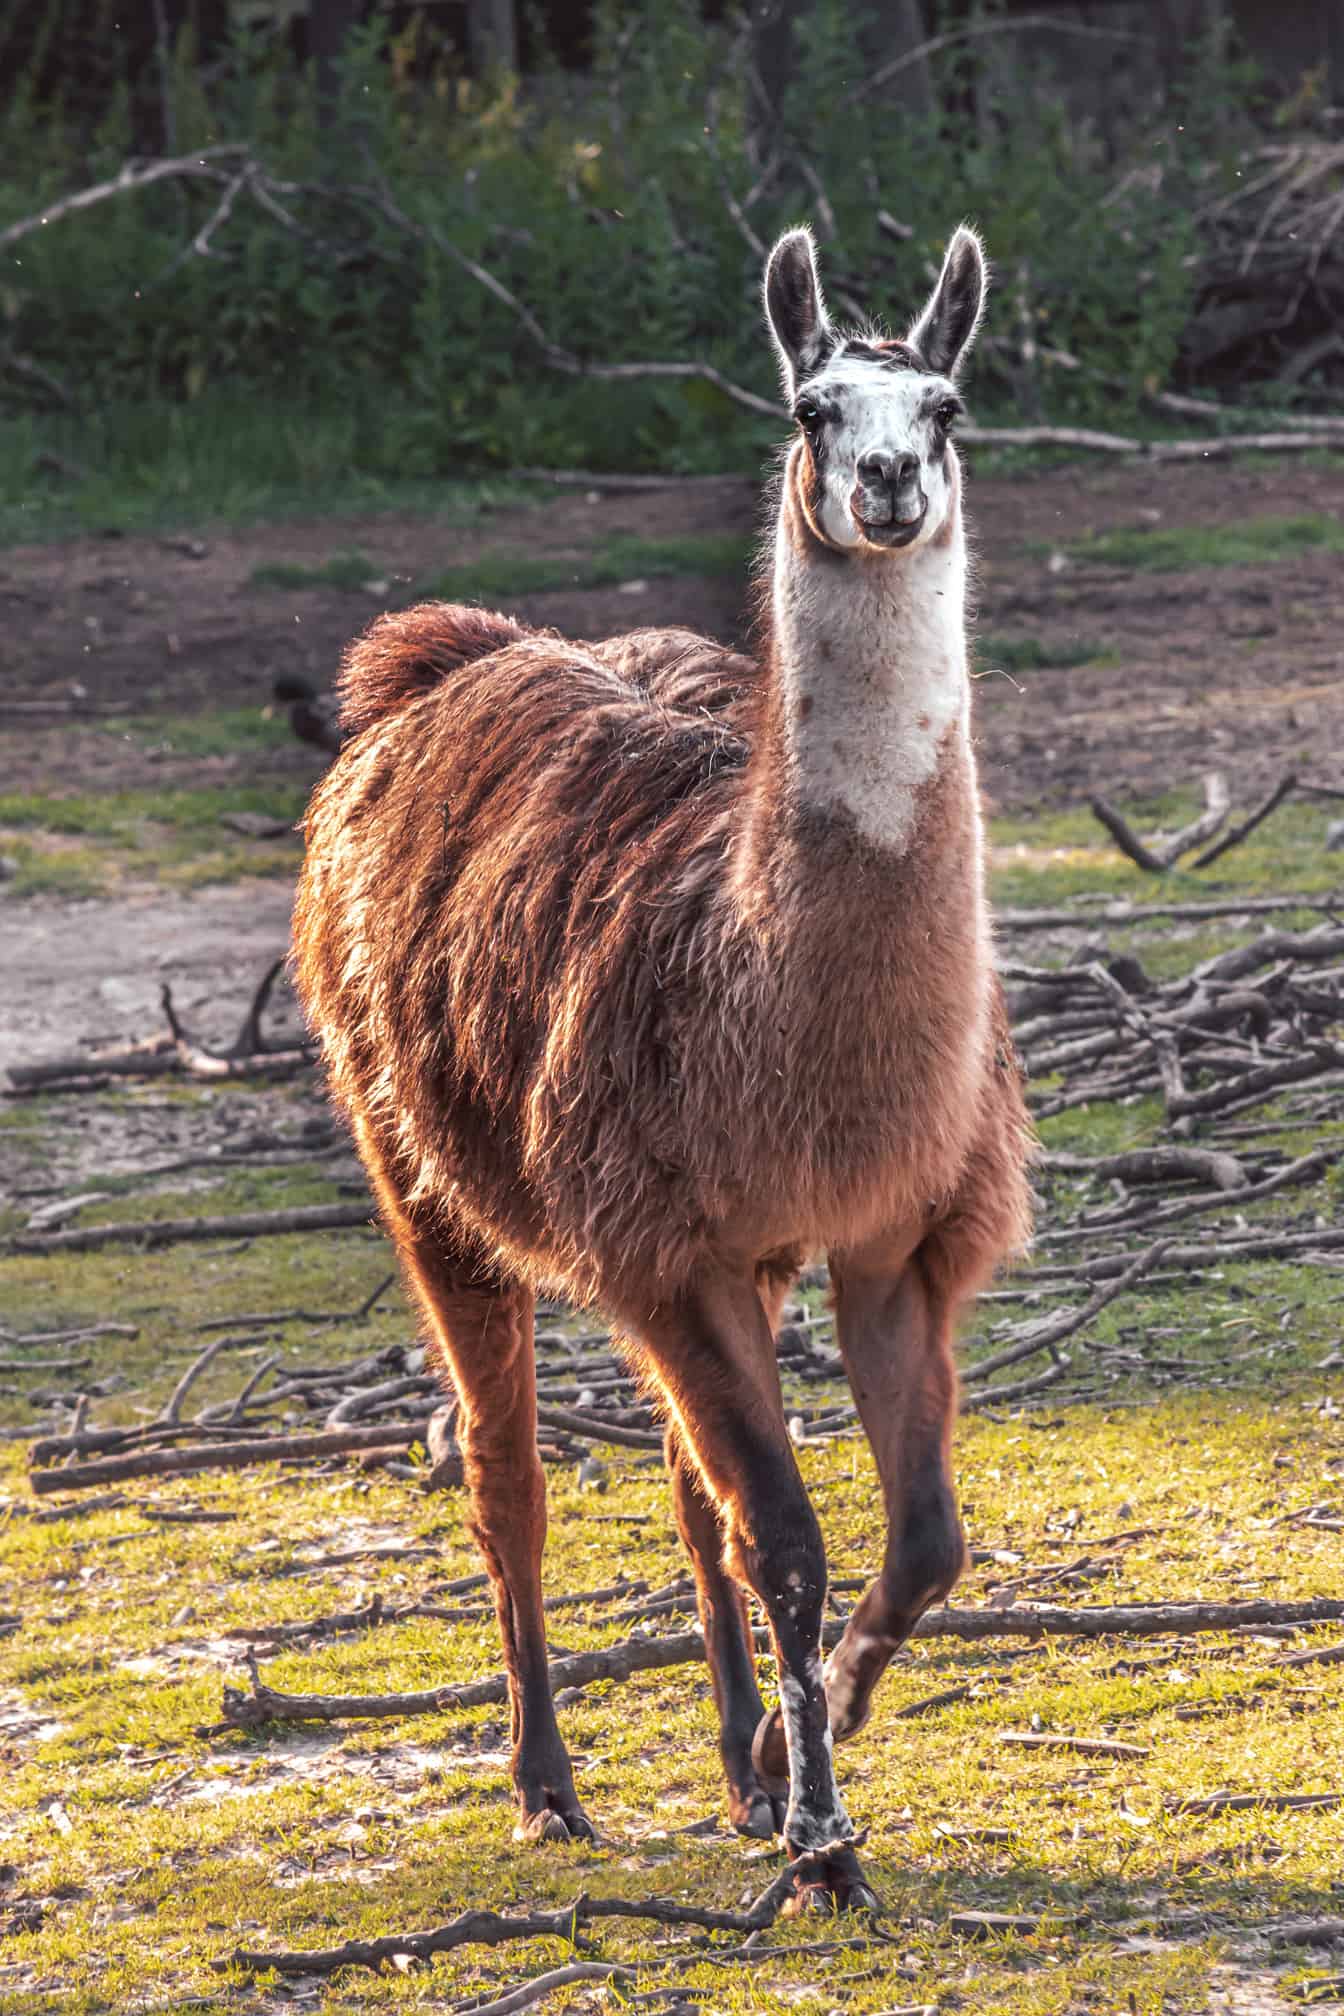 Animale (Lama glama) marrone chiaro nell’habitat naturale della natura selvaggia